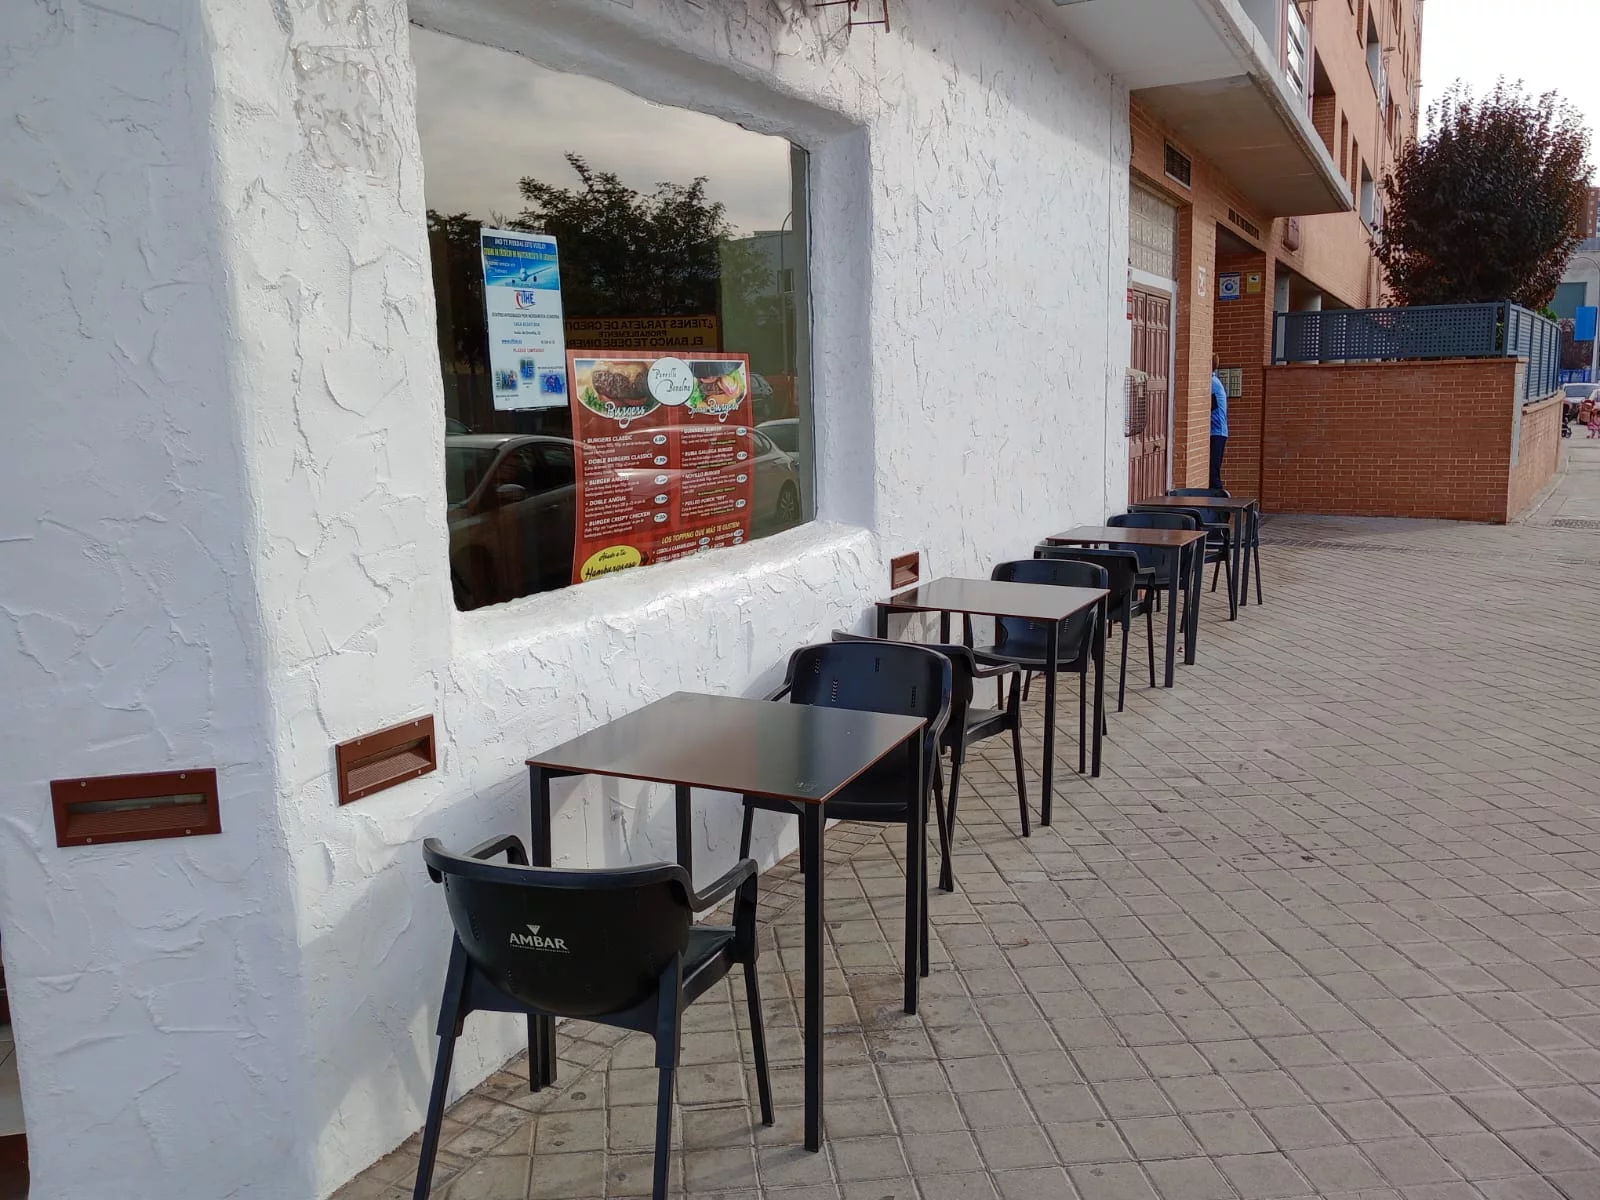 Restaurante con terraza en la zona nueva del barrio de San Fermín (Madrid)